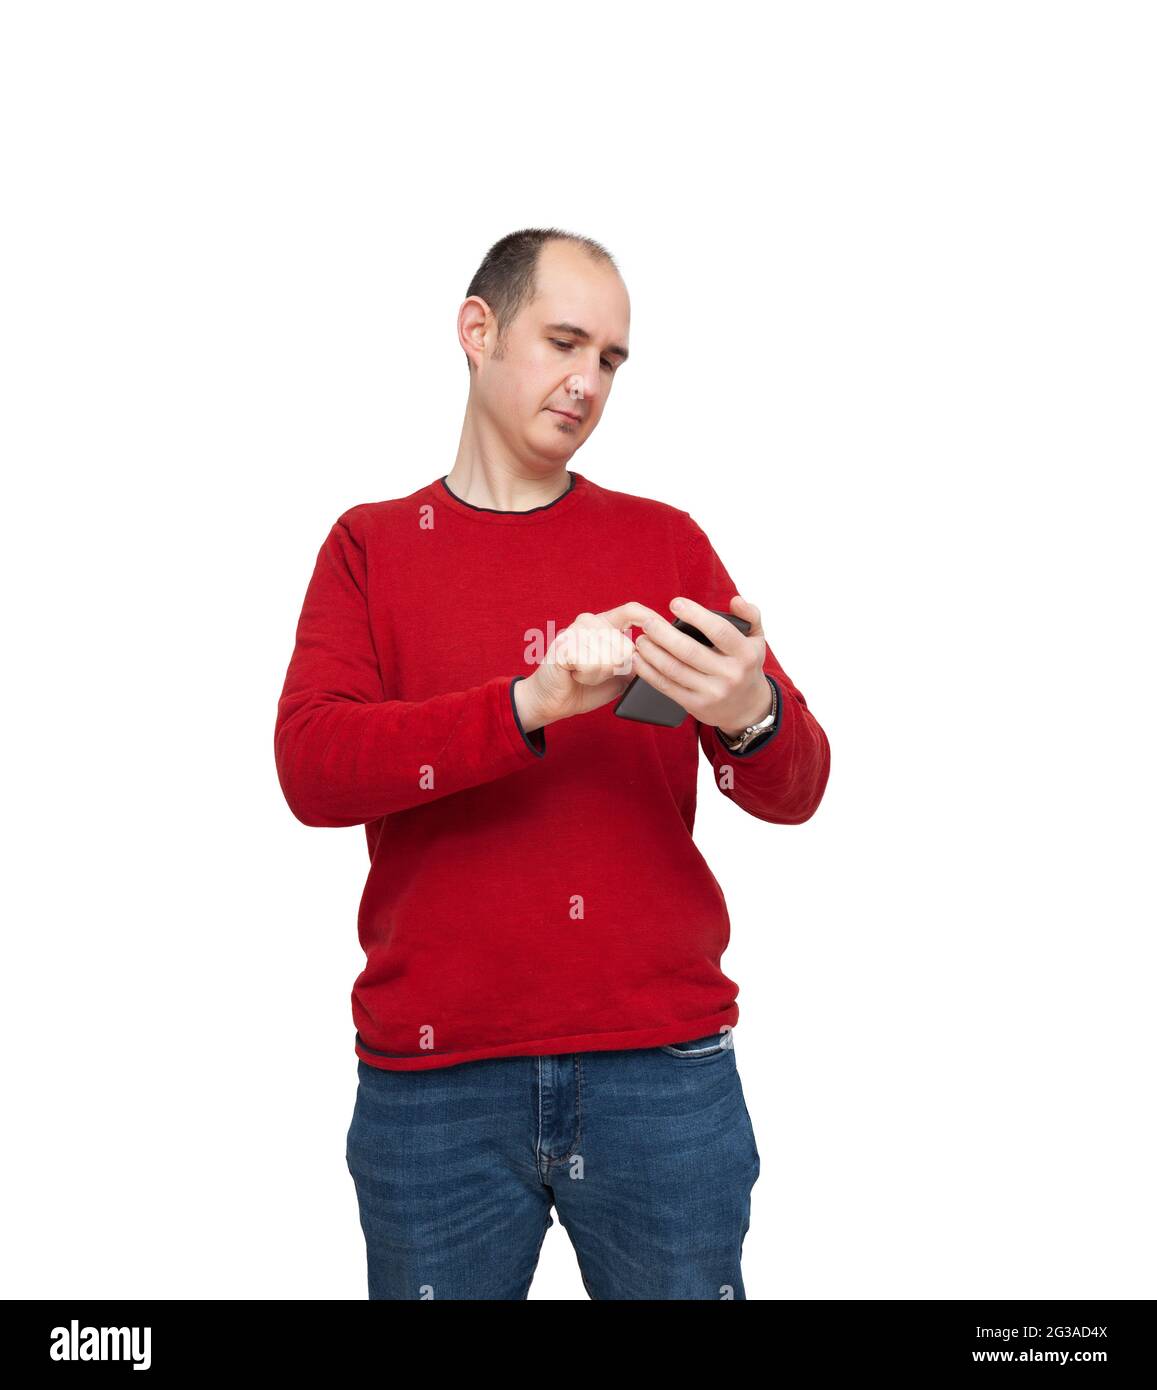 Ein kahler junger Mann tippt mit seinem Mobiltelefon eine Nachricht ein. Die Person ist mit einem roten Pullover, Jeans und einer Uhr bekleidet. Der Hintergrund ist weiß. Stockfoto